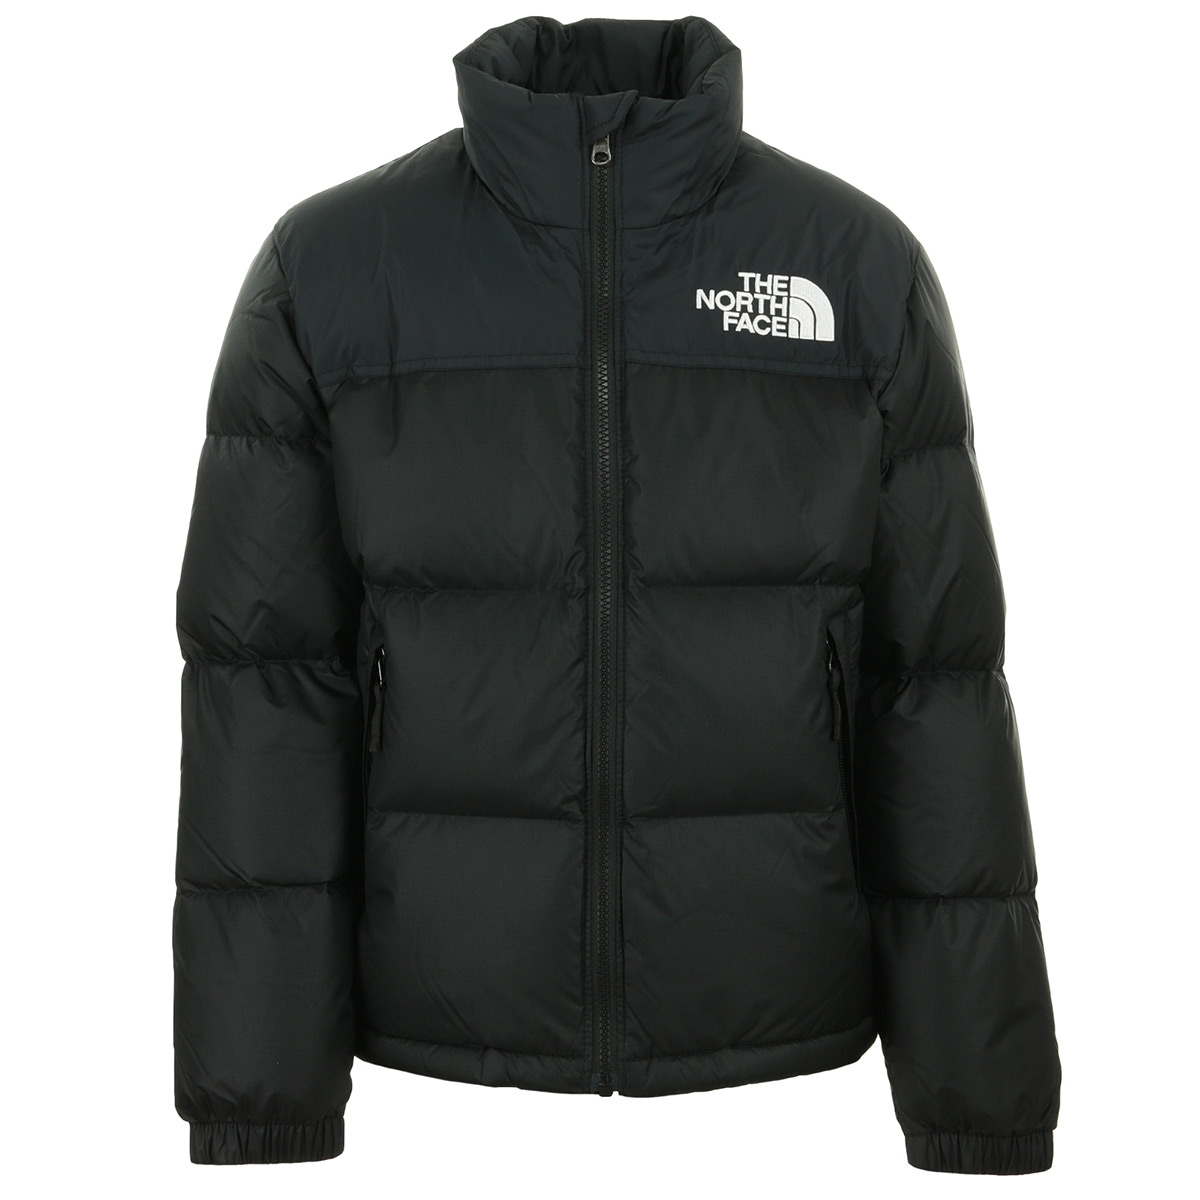 The North Face 1996 Retro Nuptse Jacket 